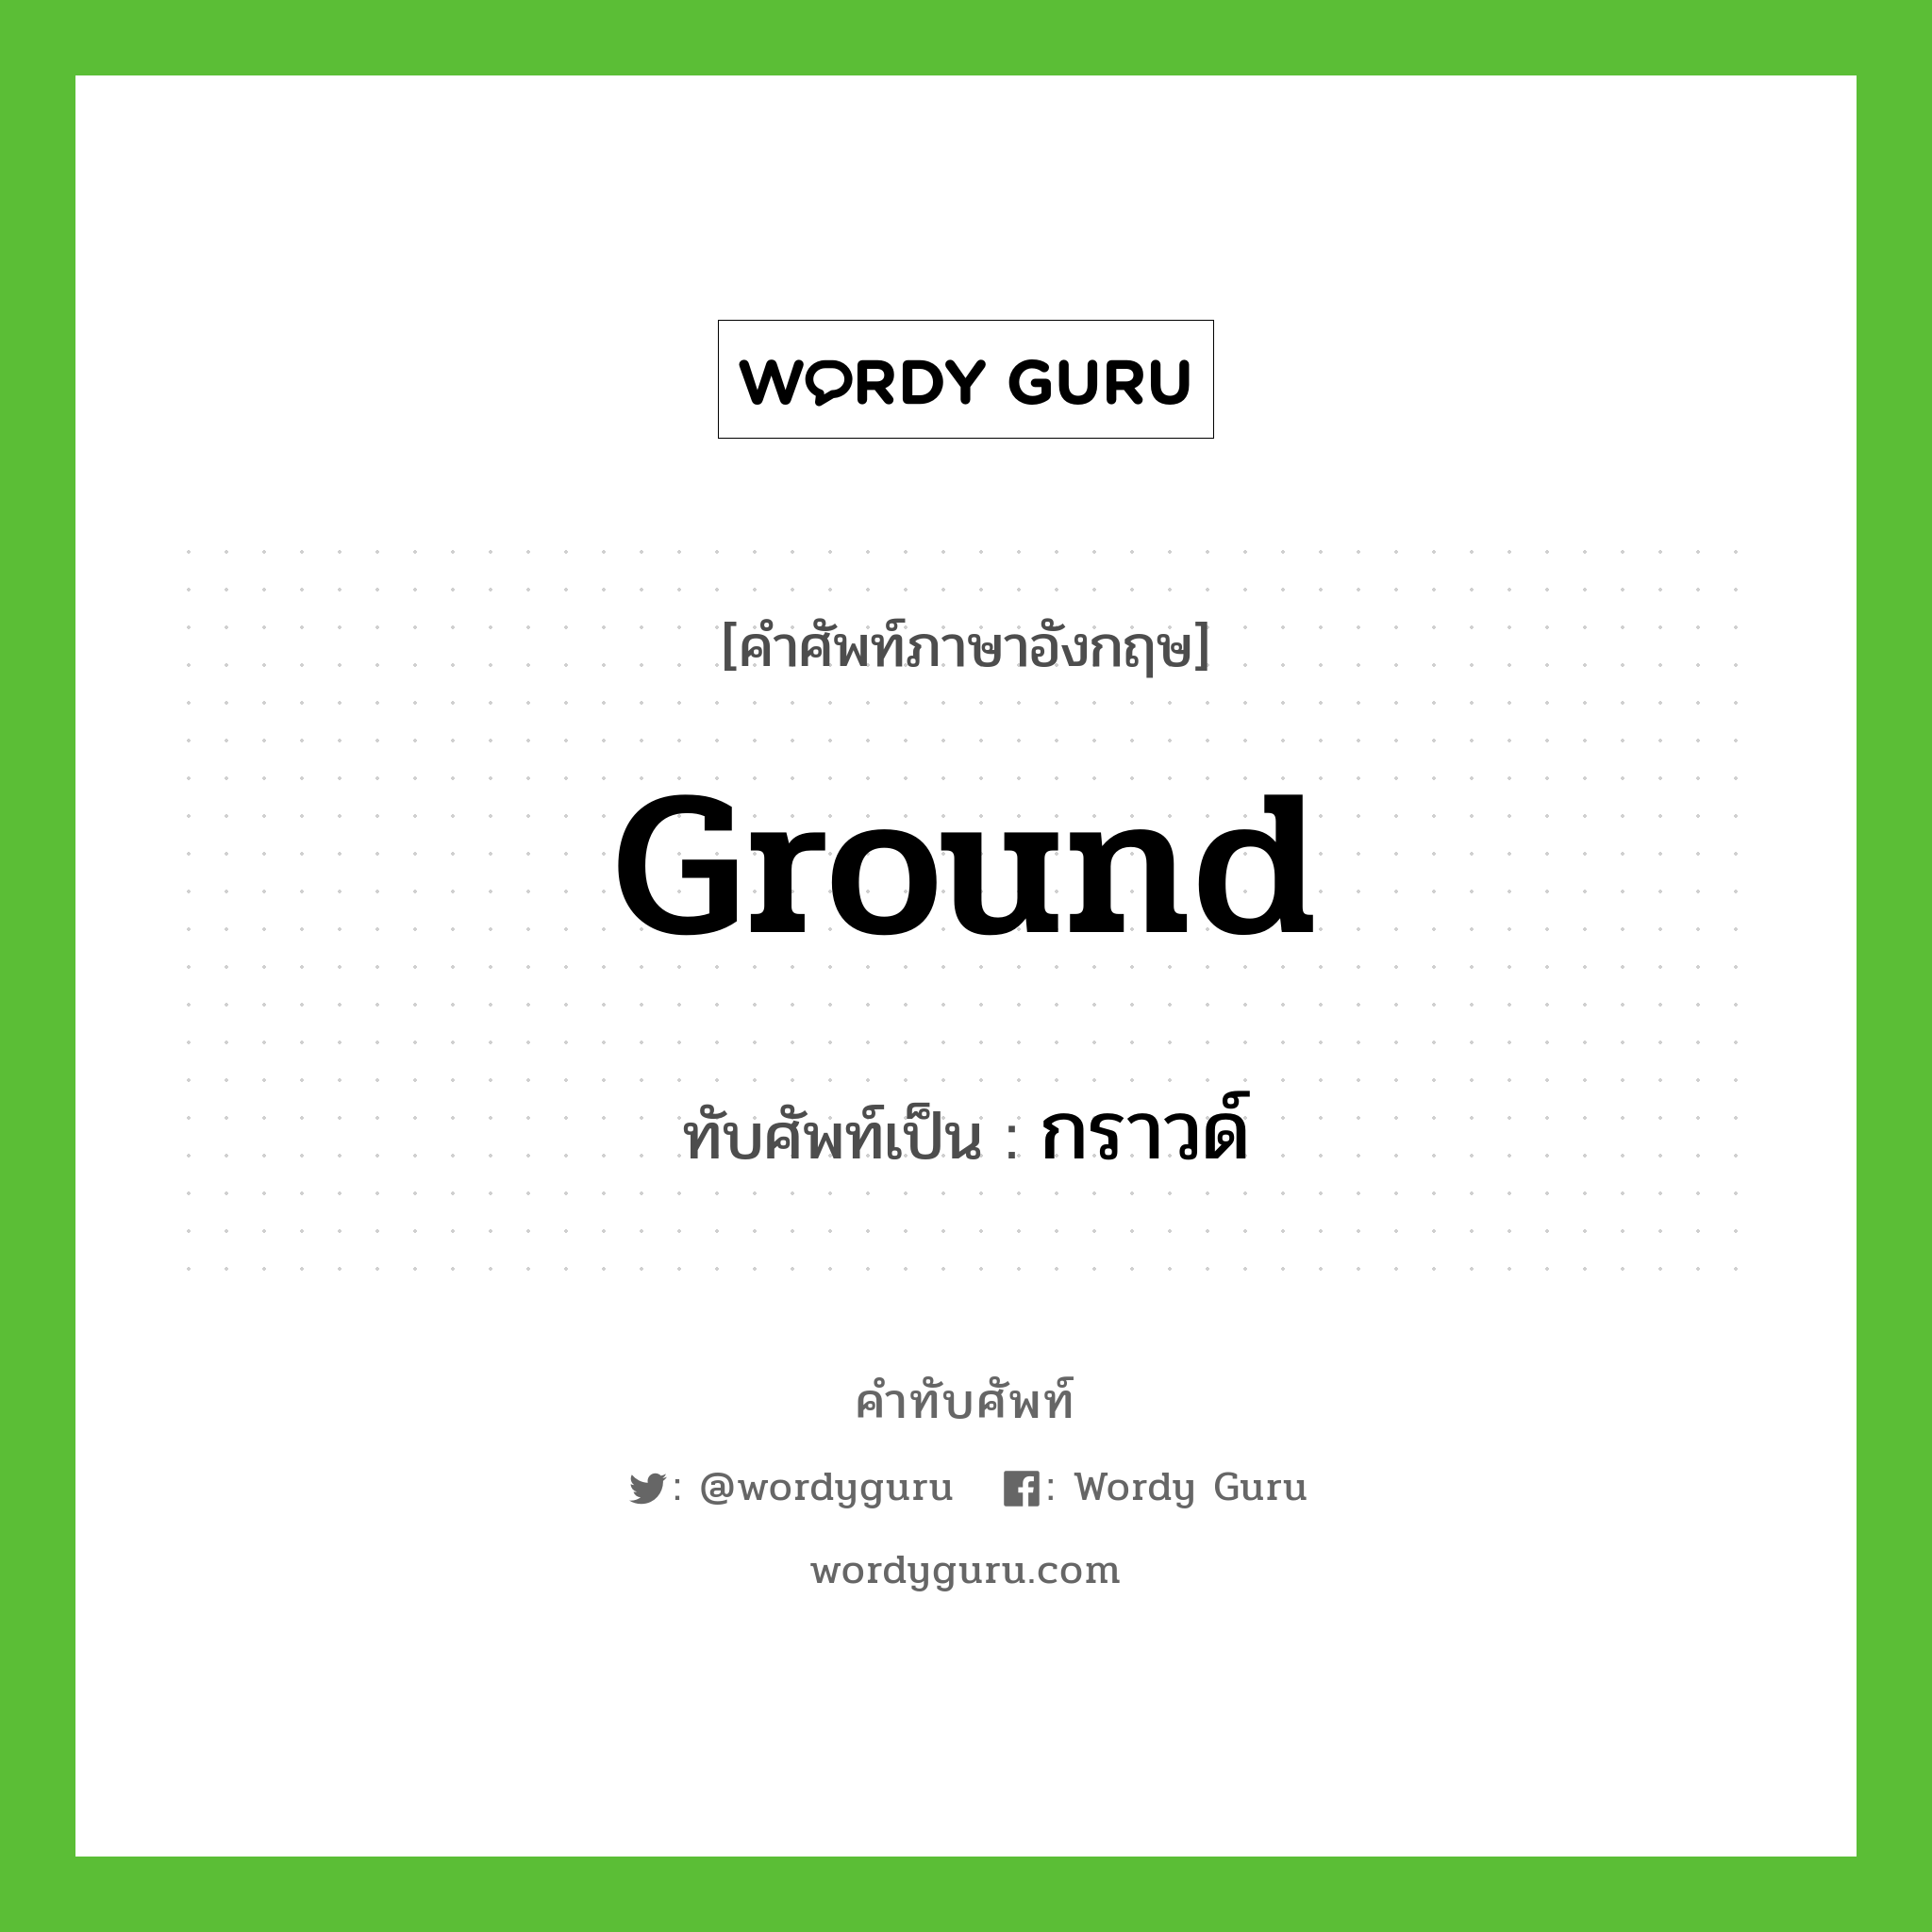 ground เขียนเป็นคำไทยว่าอะไร?, คำศัพท์ภาษาอังกฤษ ground ทับศัพท์เป็น กราวด์